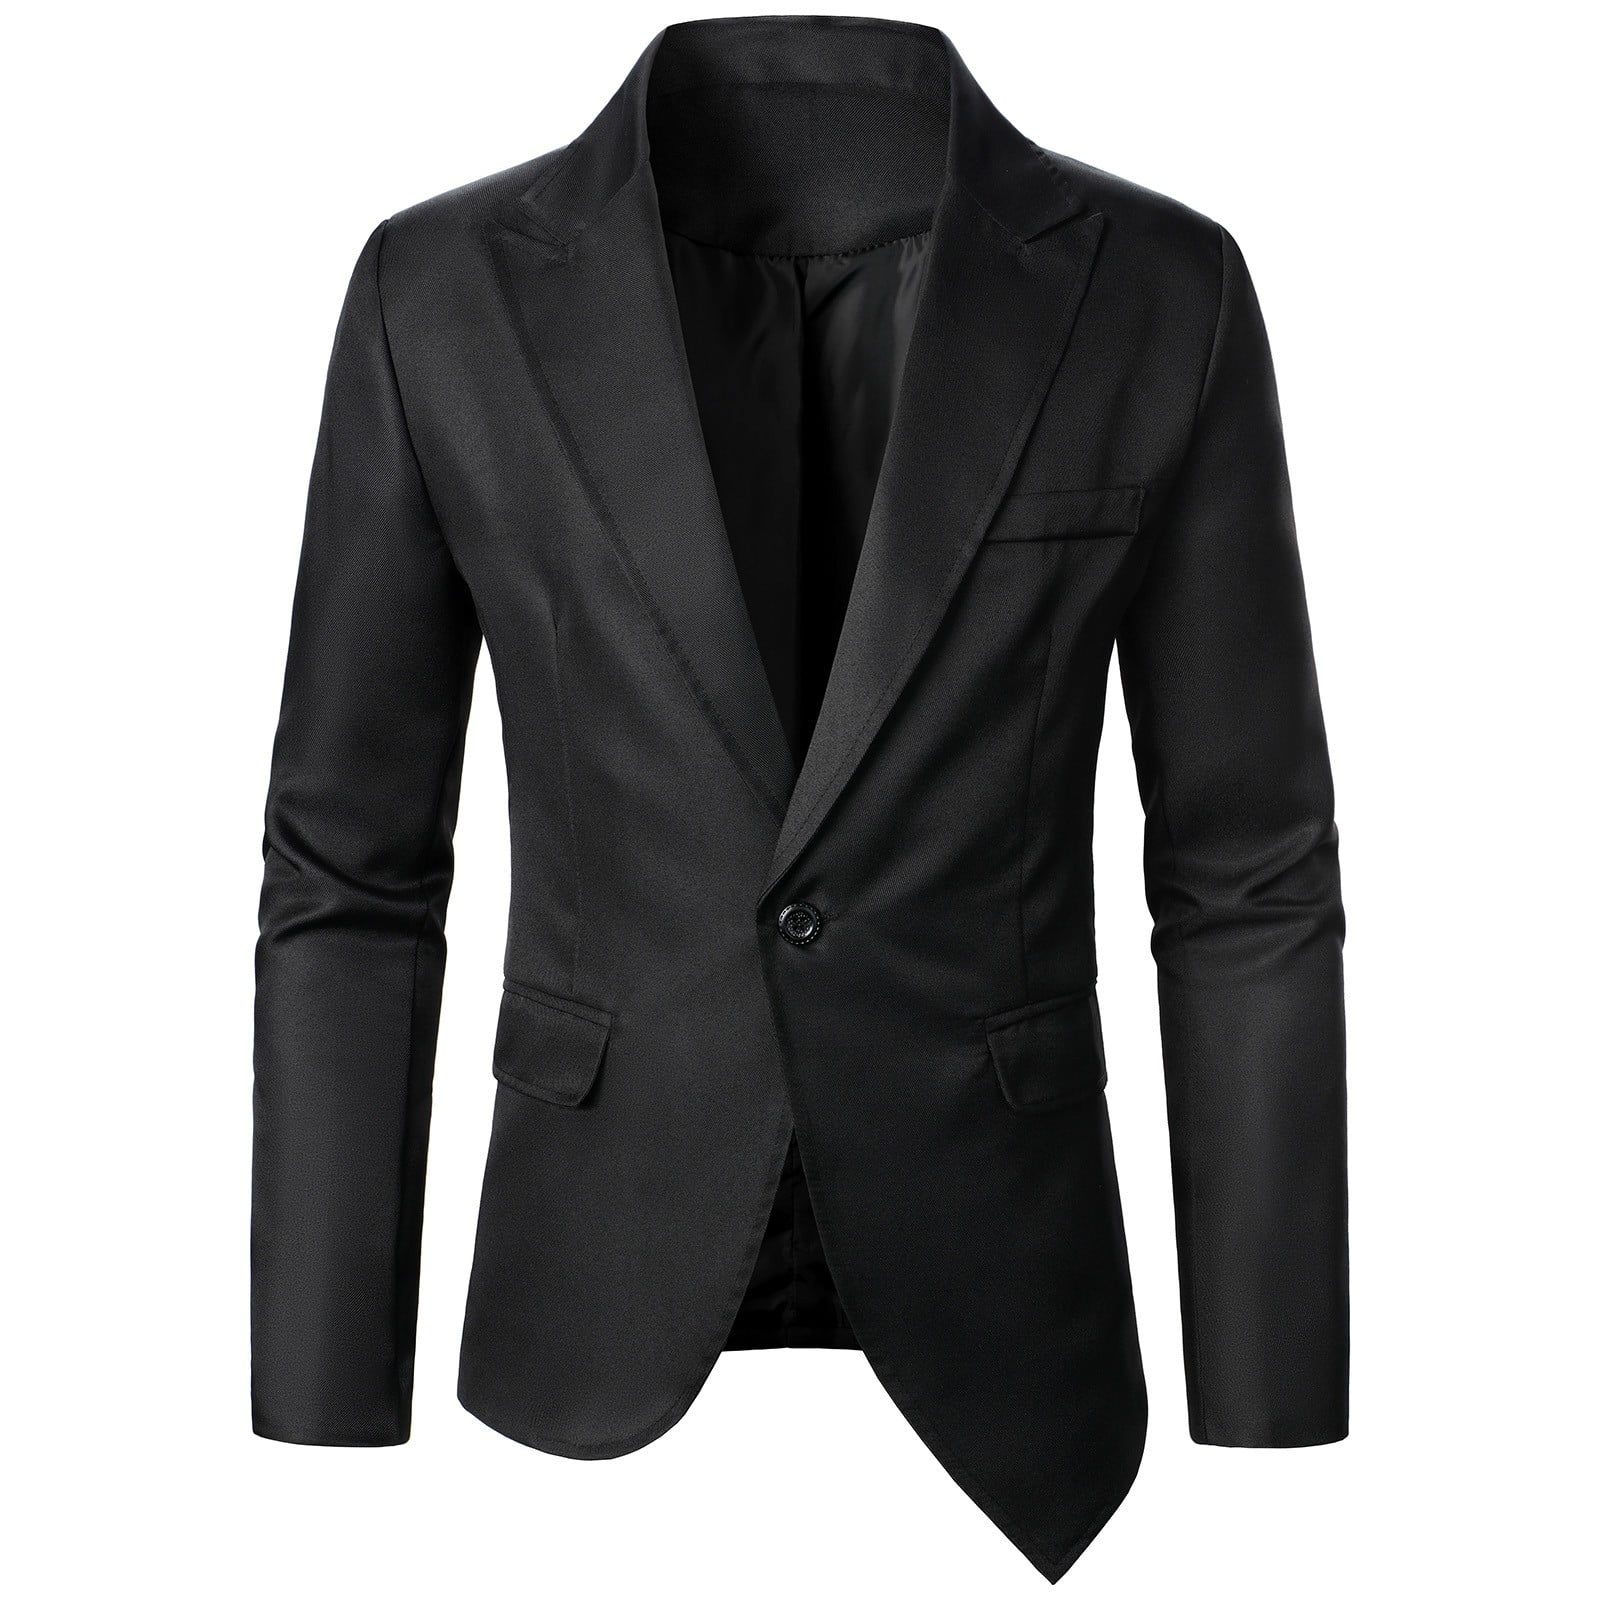 Vintage Dark Brown Herringbone Tweed Suit : Made To Measure Custom Jeans  For Men & Women, MakeYourOwnJeans®